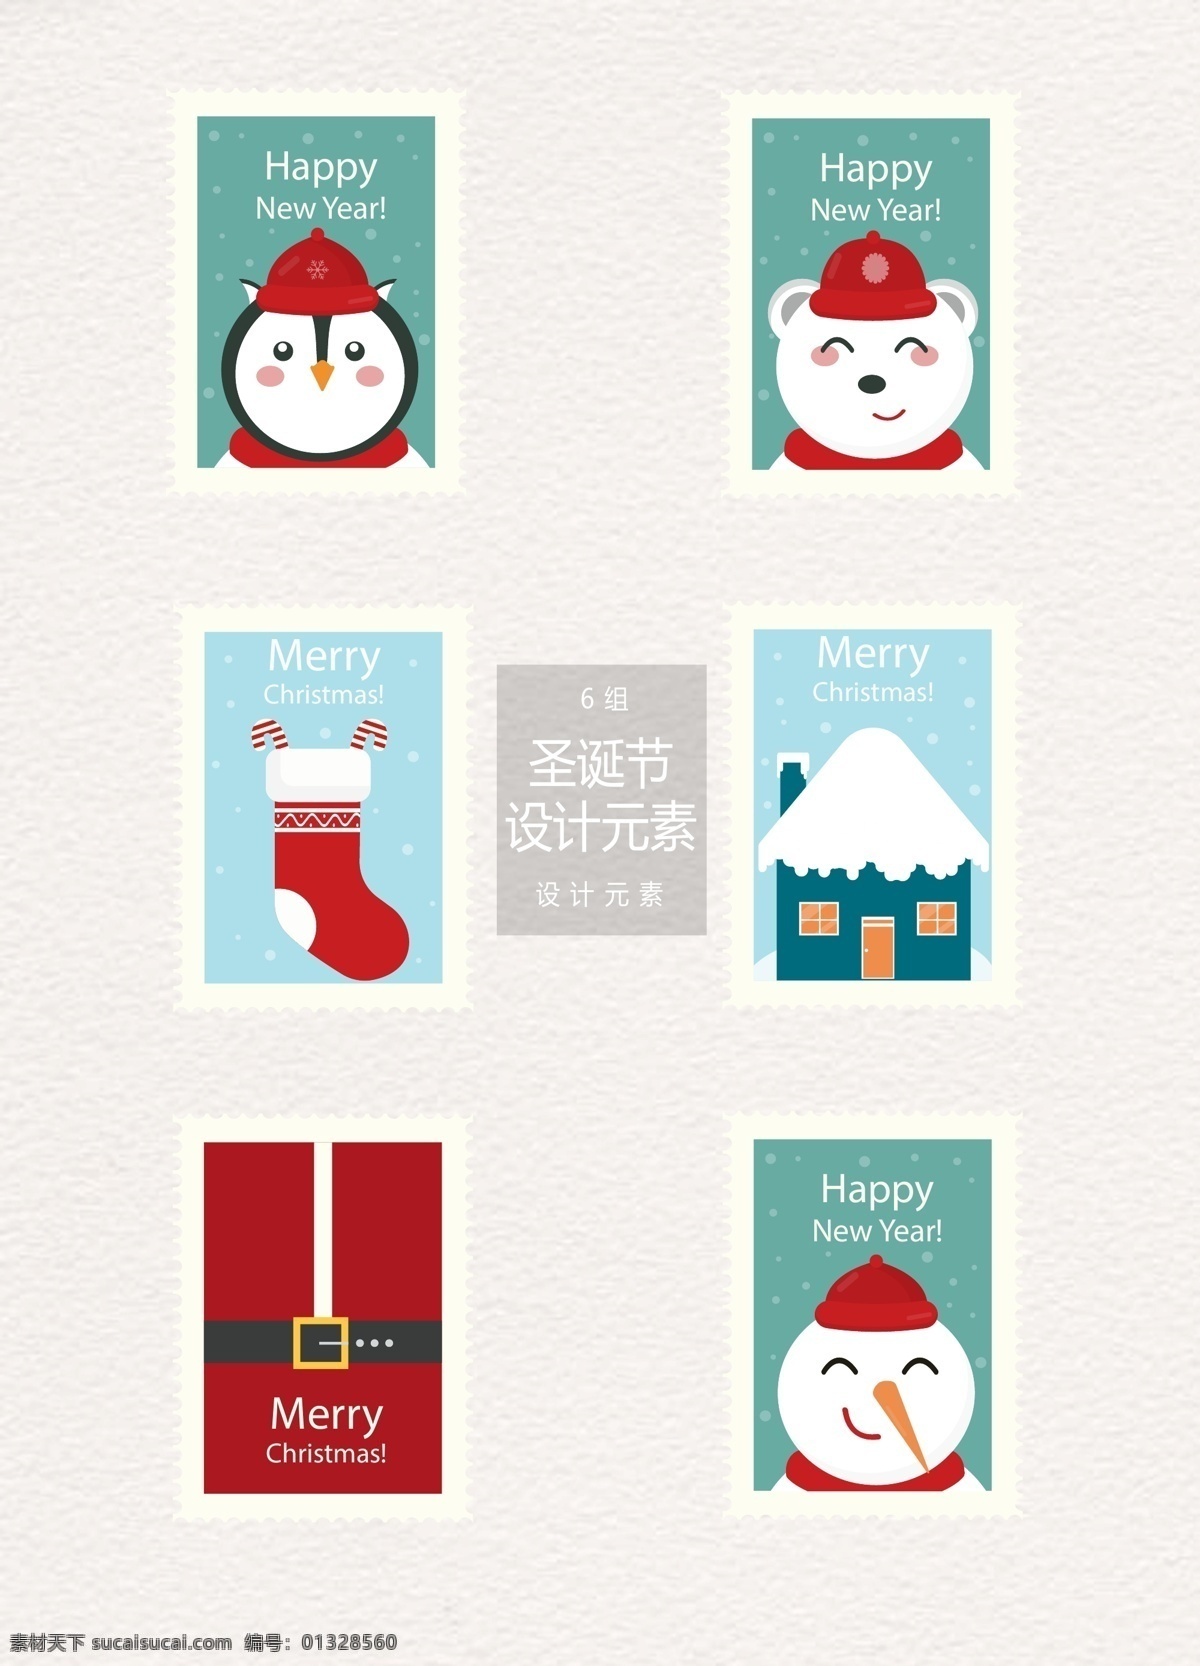 可爱 圣诞节 邮票 标签 元素 设计元素 标签设计 卡通 圣诞 圣诞邮票 圣诞标签 企鹅 北极熊 圣诞袜 雪人